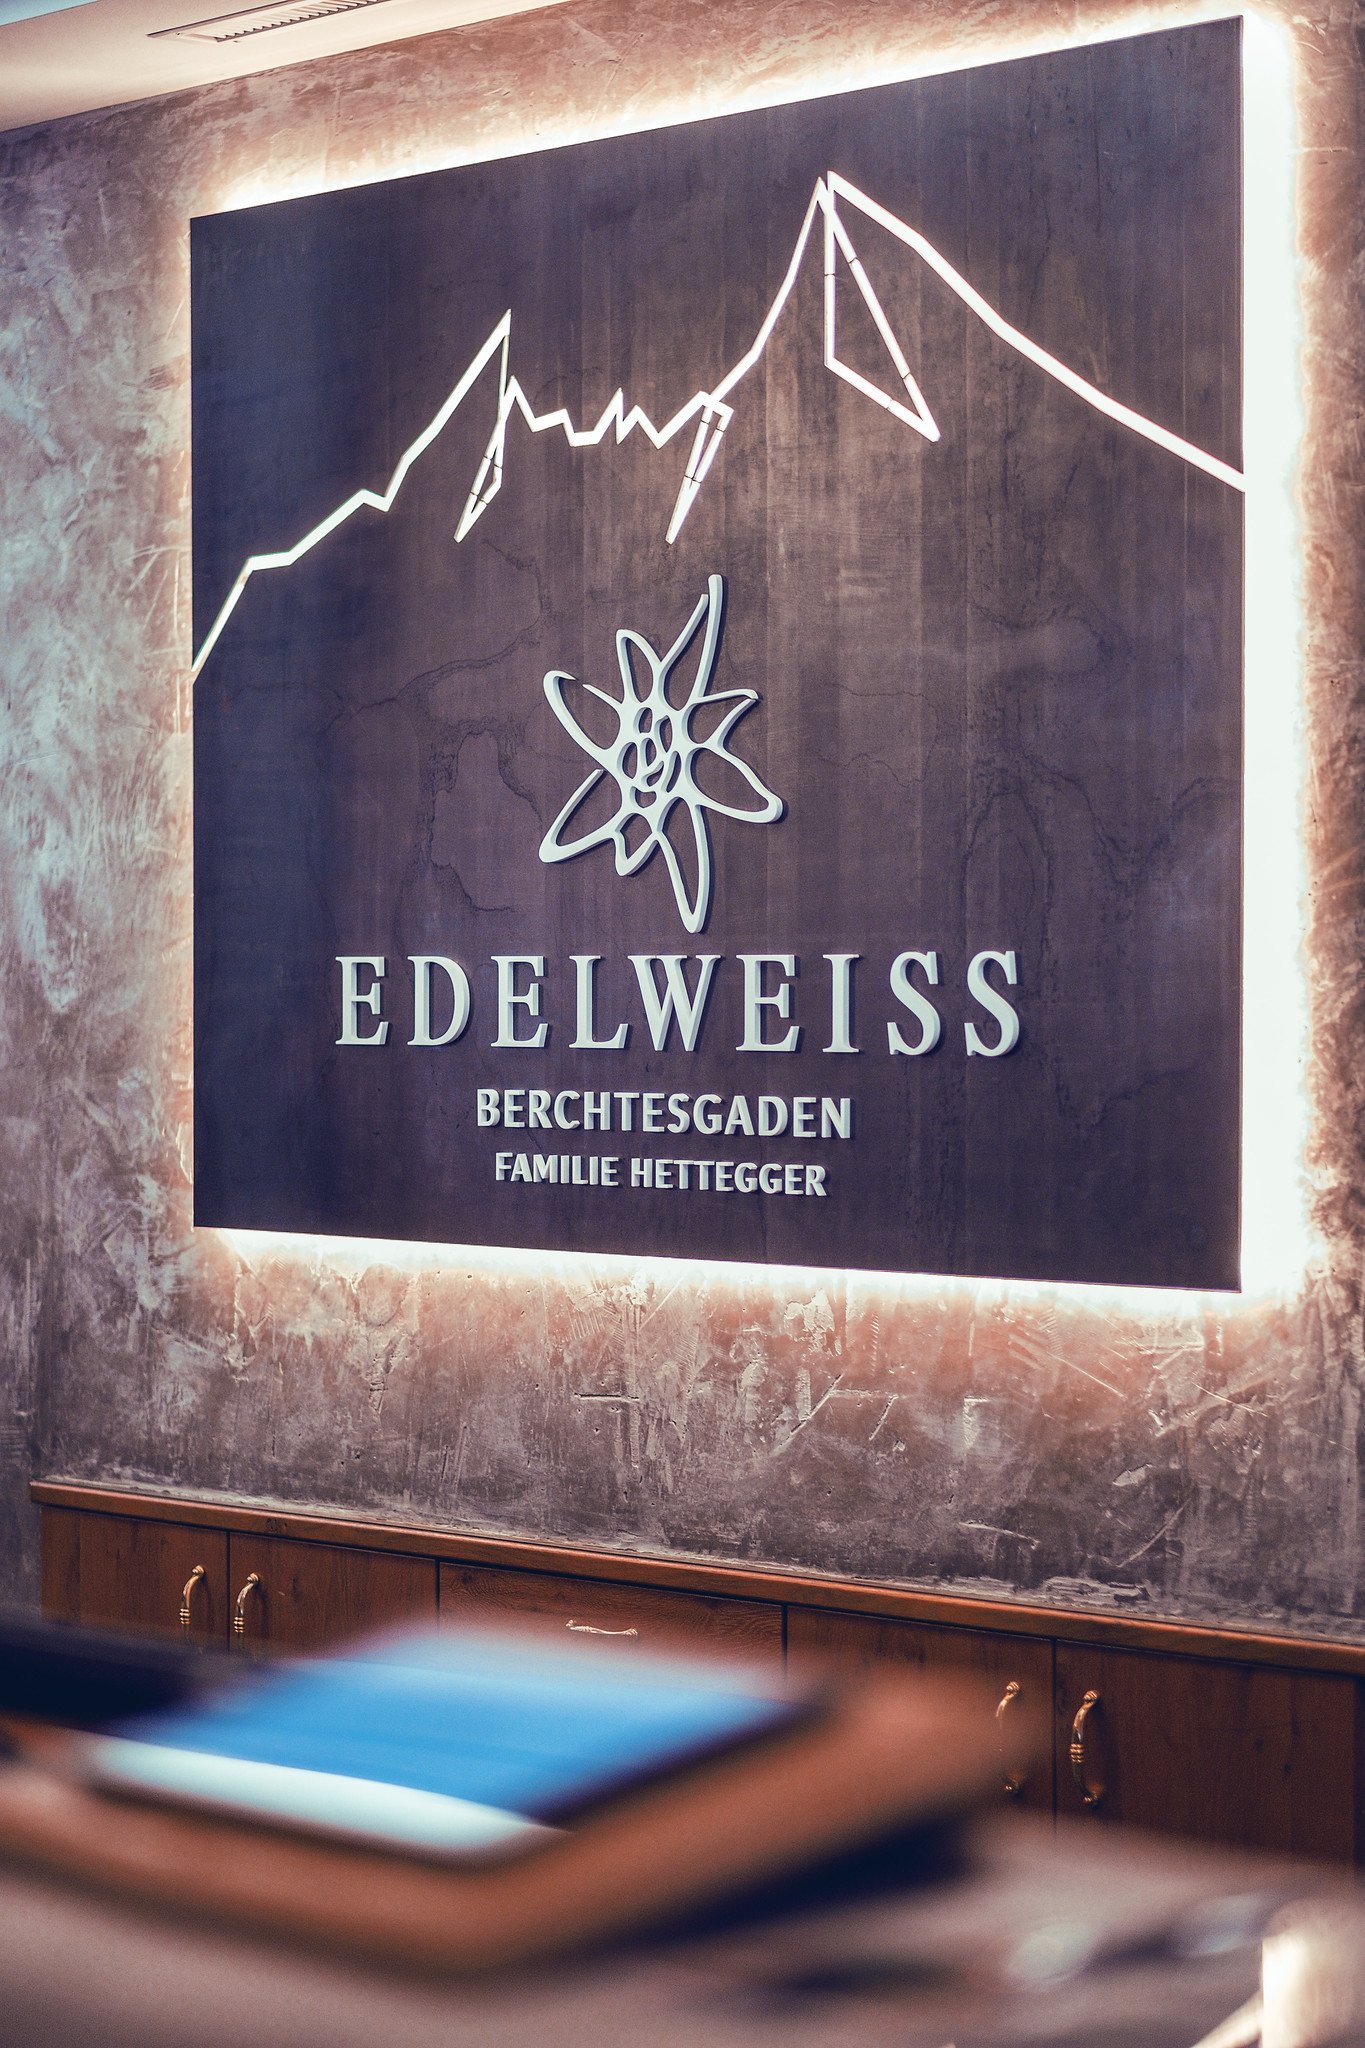 Das Edelweiss Berchtesgaden | Germany